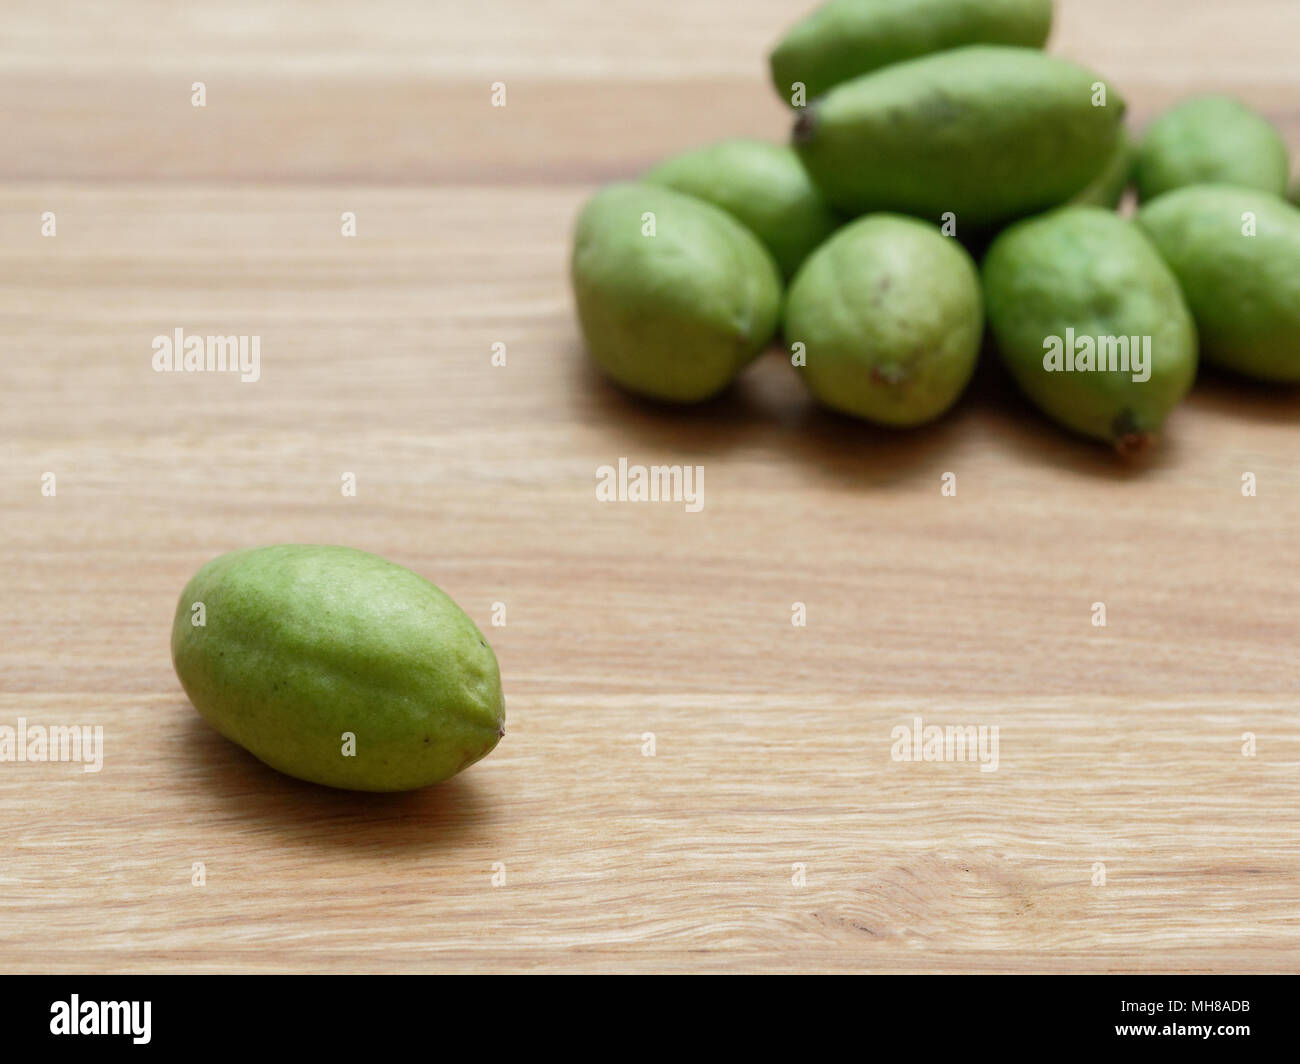 Mango like fruit hi-res stock photography and images - Alamy